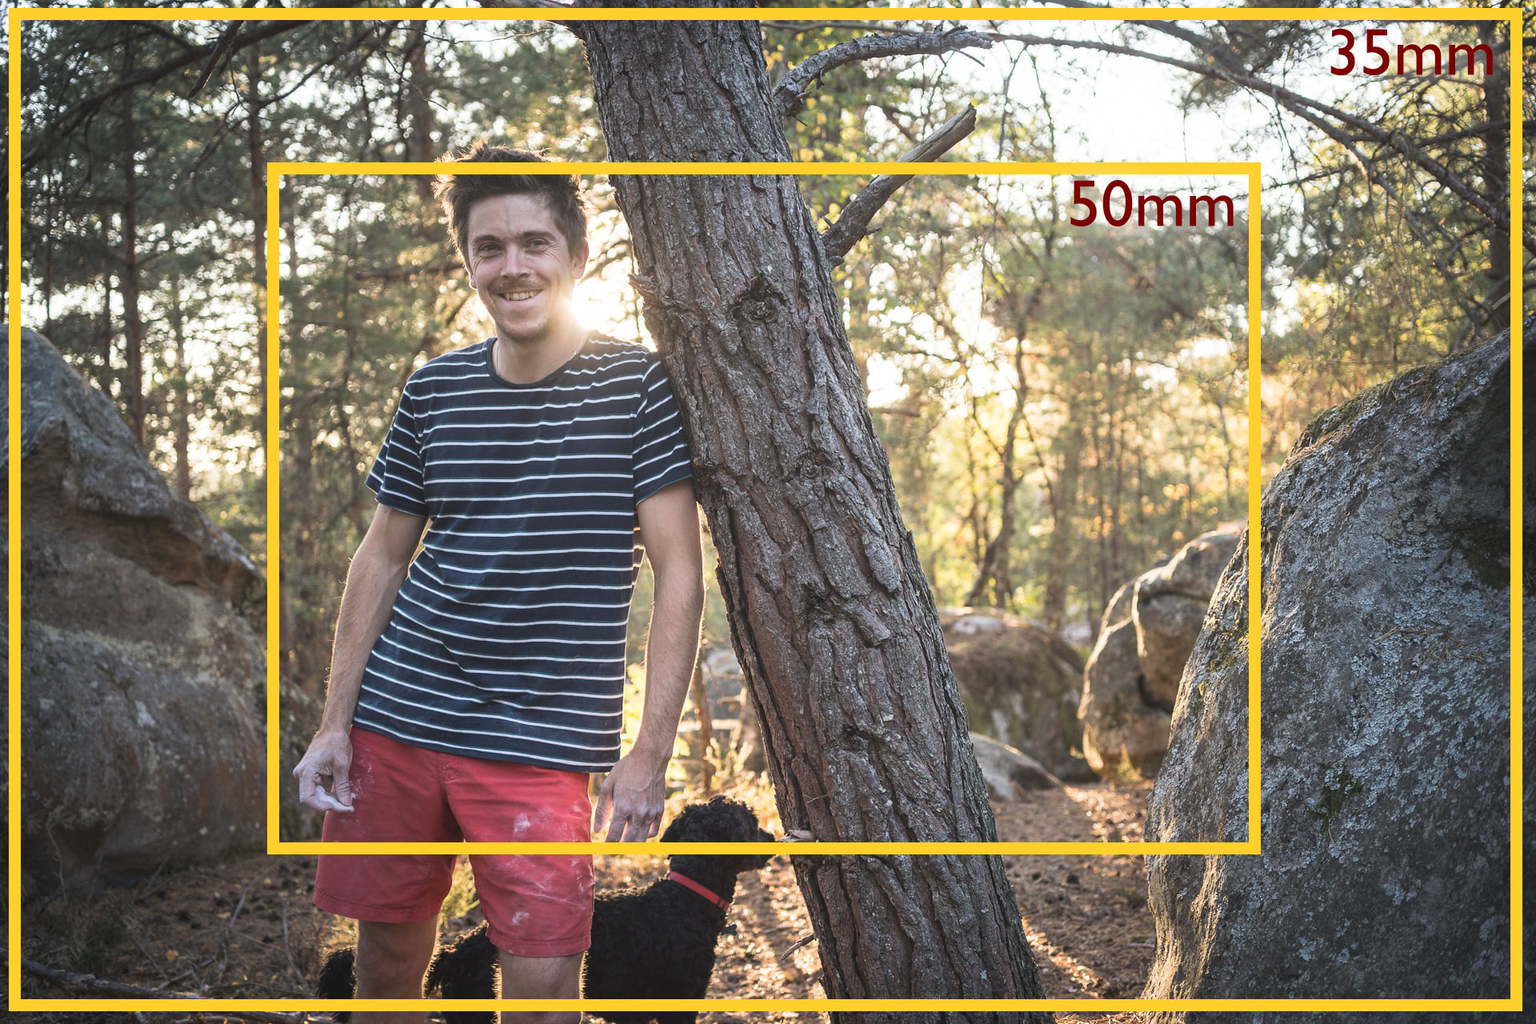 fysiek kleding stof premier 35mm vs 50mm (Which Lens Focal Length is Better?)